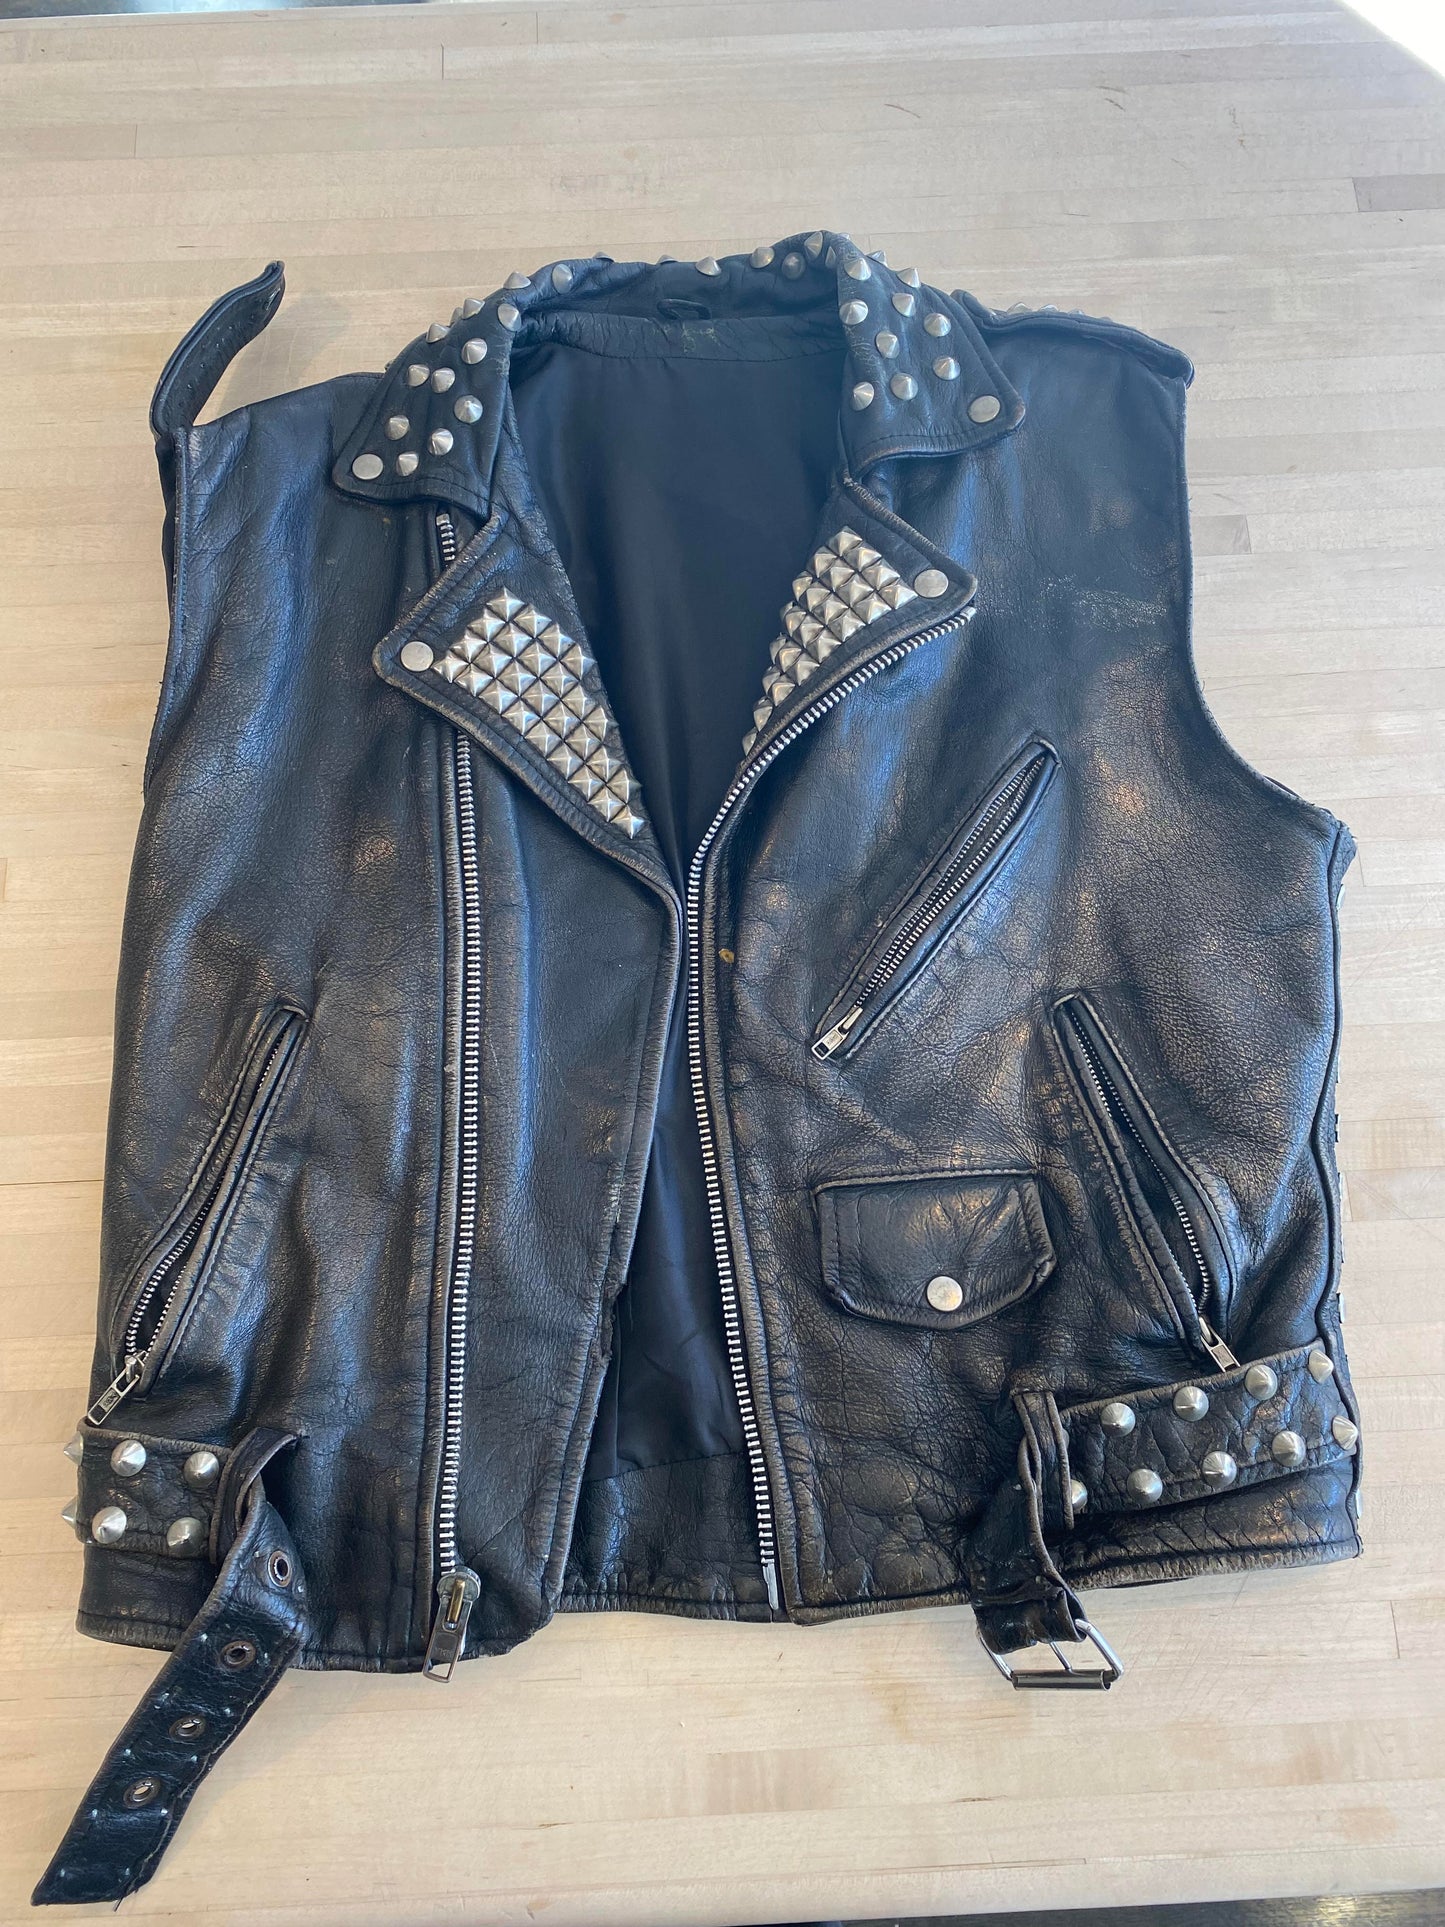 John 5's Stage Used Leather Jacket/Vest